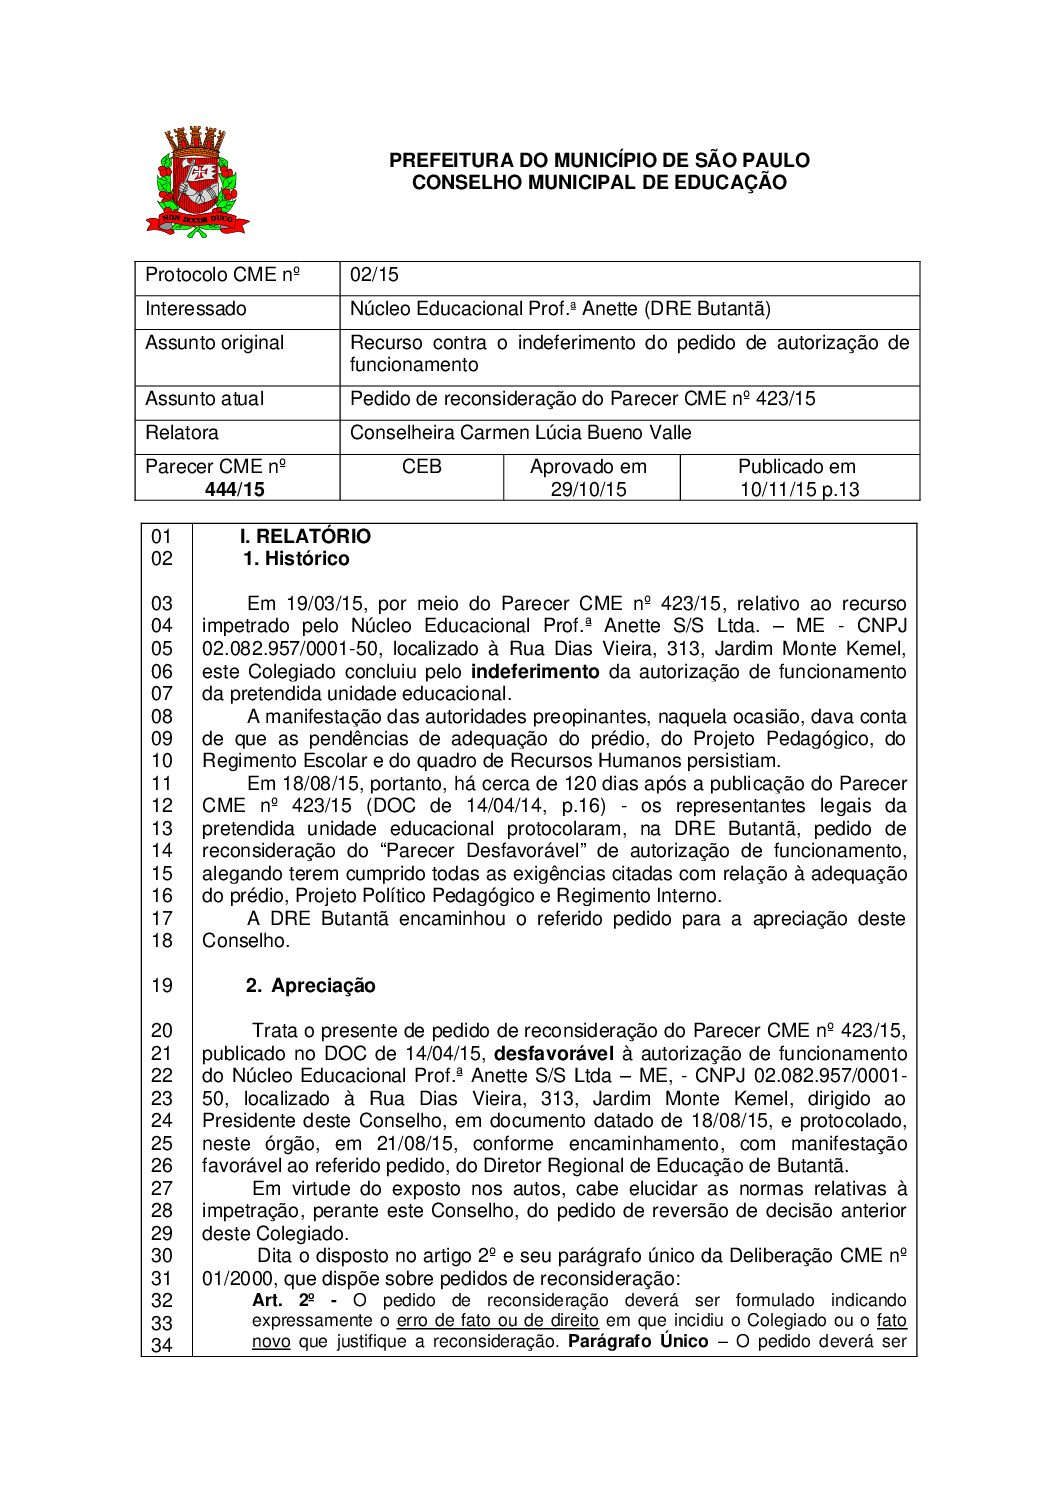 Parecer CME nº 444/2015 - Núcleo Educacional Prof.ª Anette (DRE Butantã) - Pedido de reconsideração do Parecer CME nº 423/2015